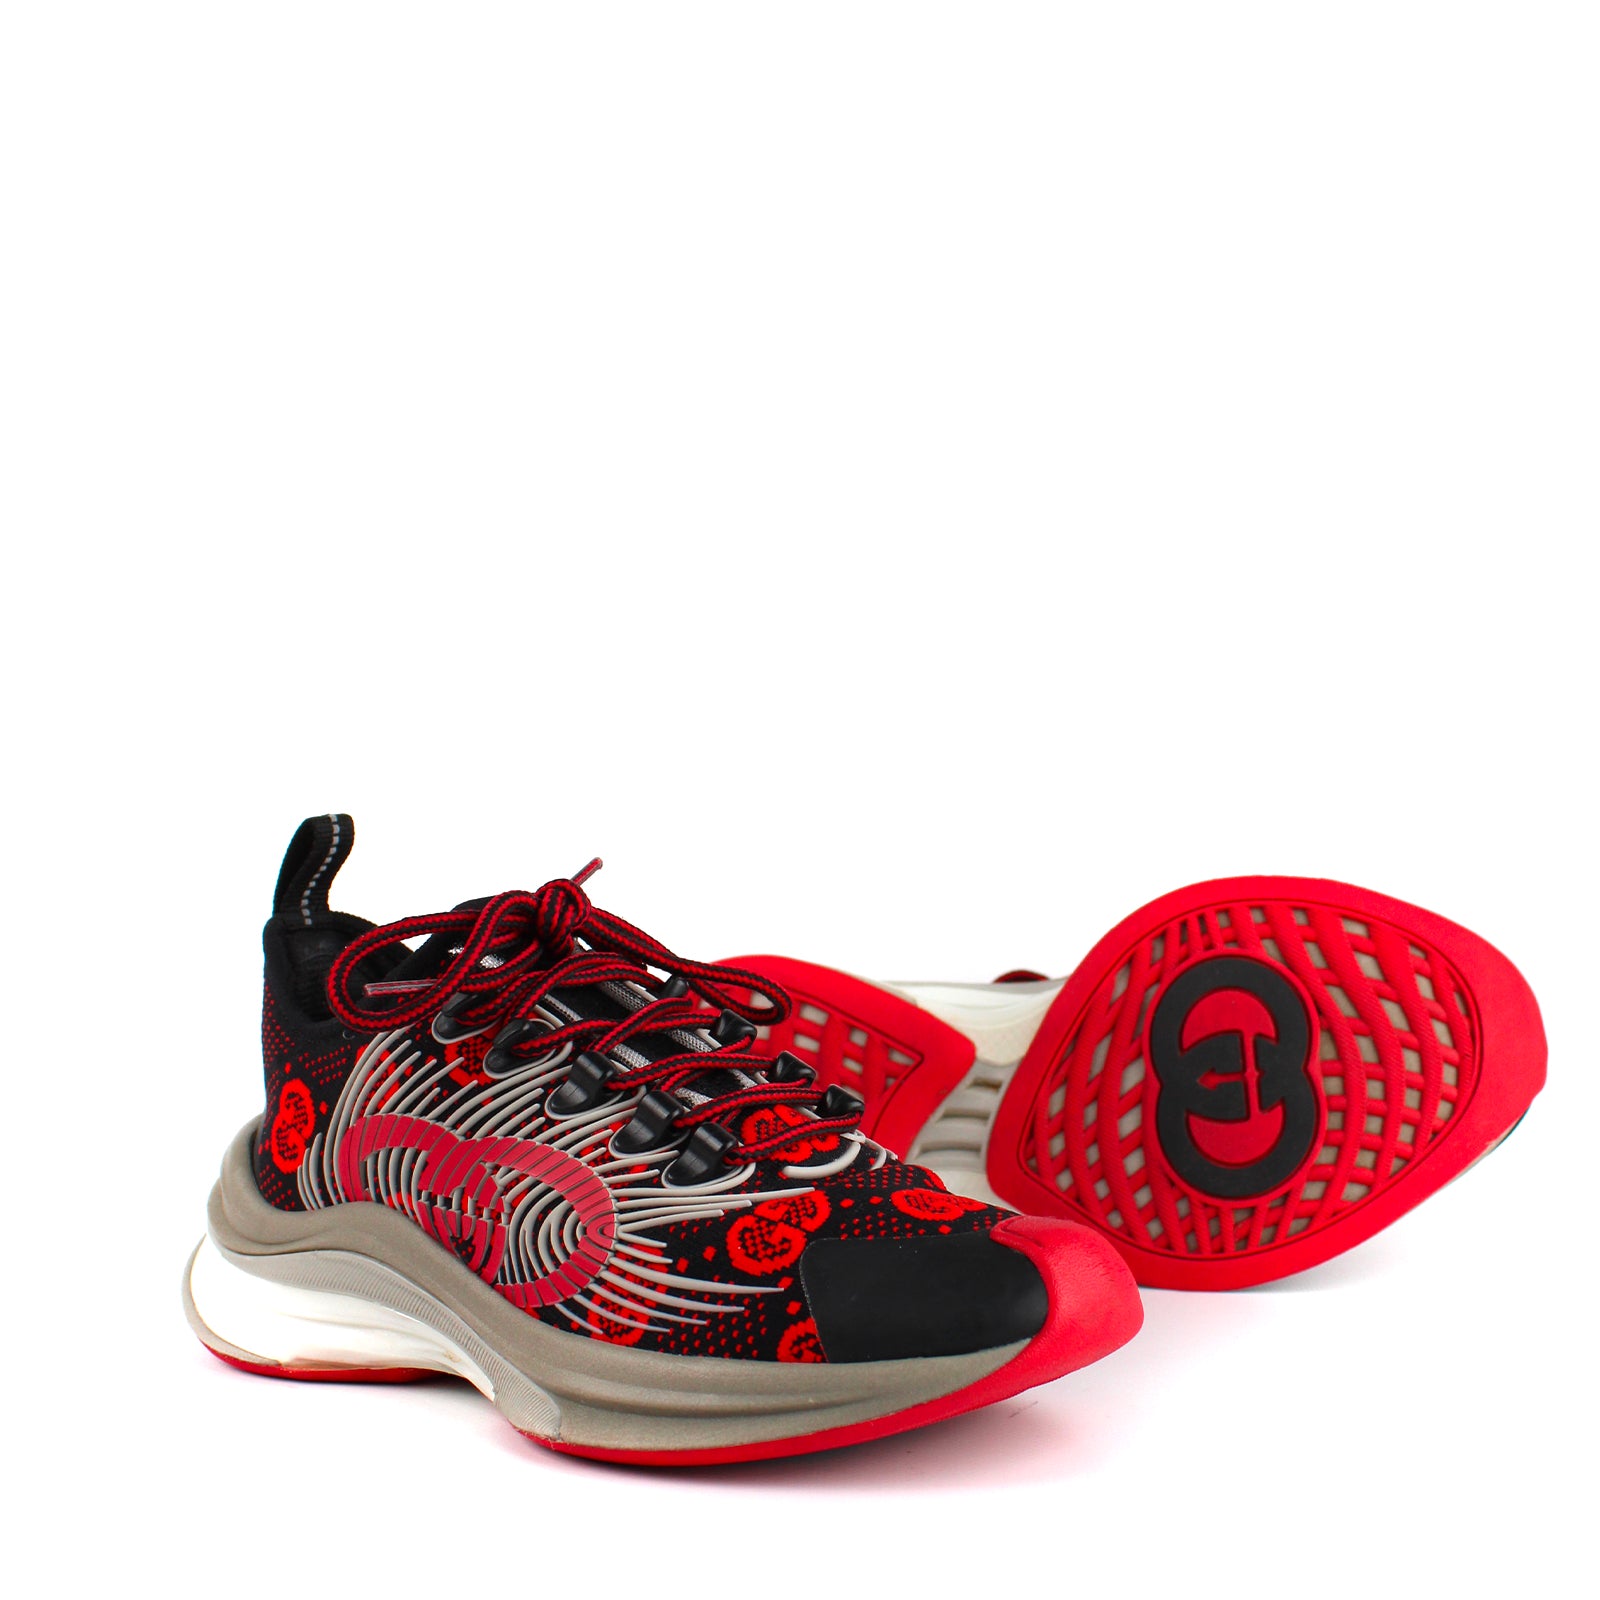 GUCCI - Sneakers Gucci Run (T36)